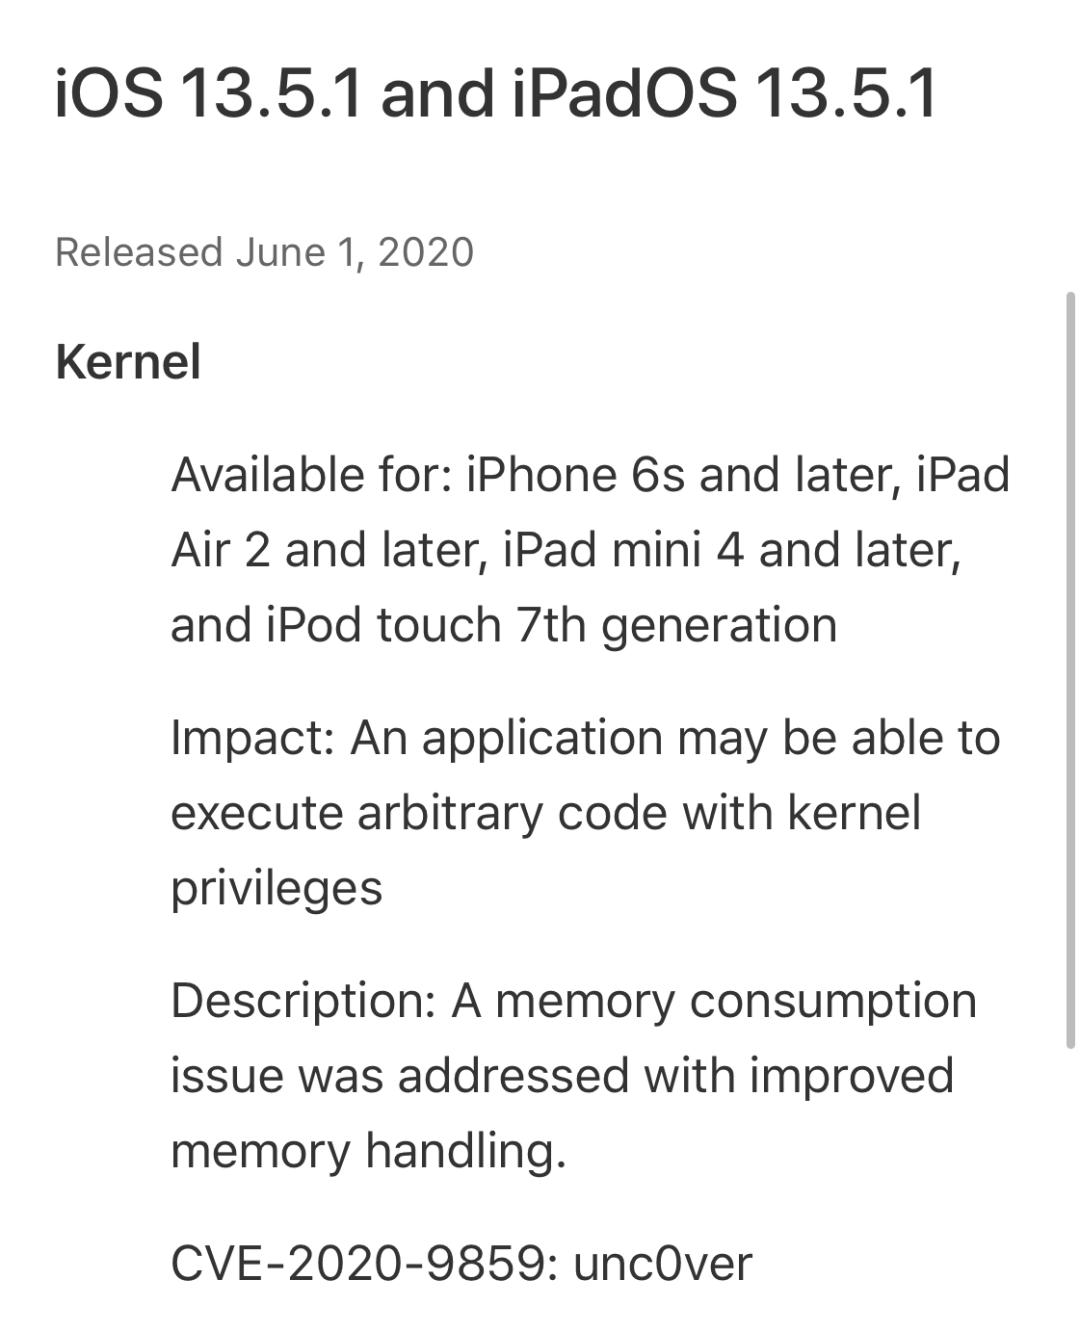 苹果同时发布两个版本系统更新